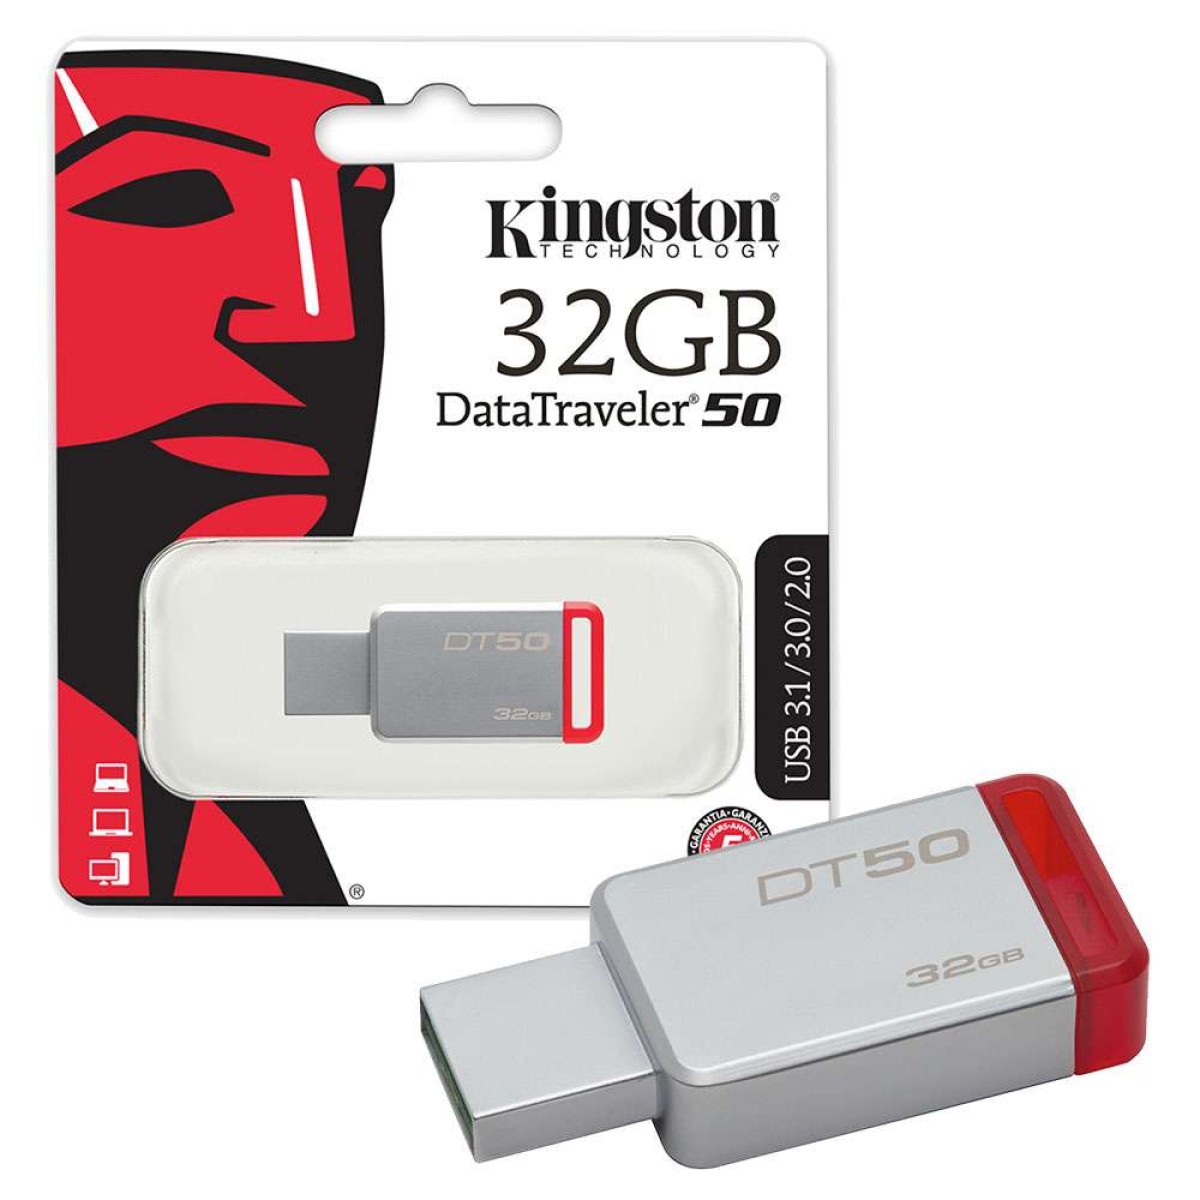 KINGSTON 32GB DT50 USB 3.0 Flash Drive